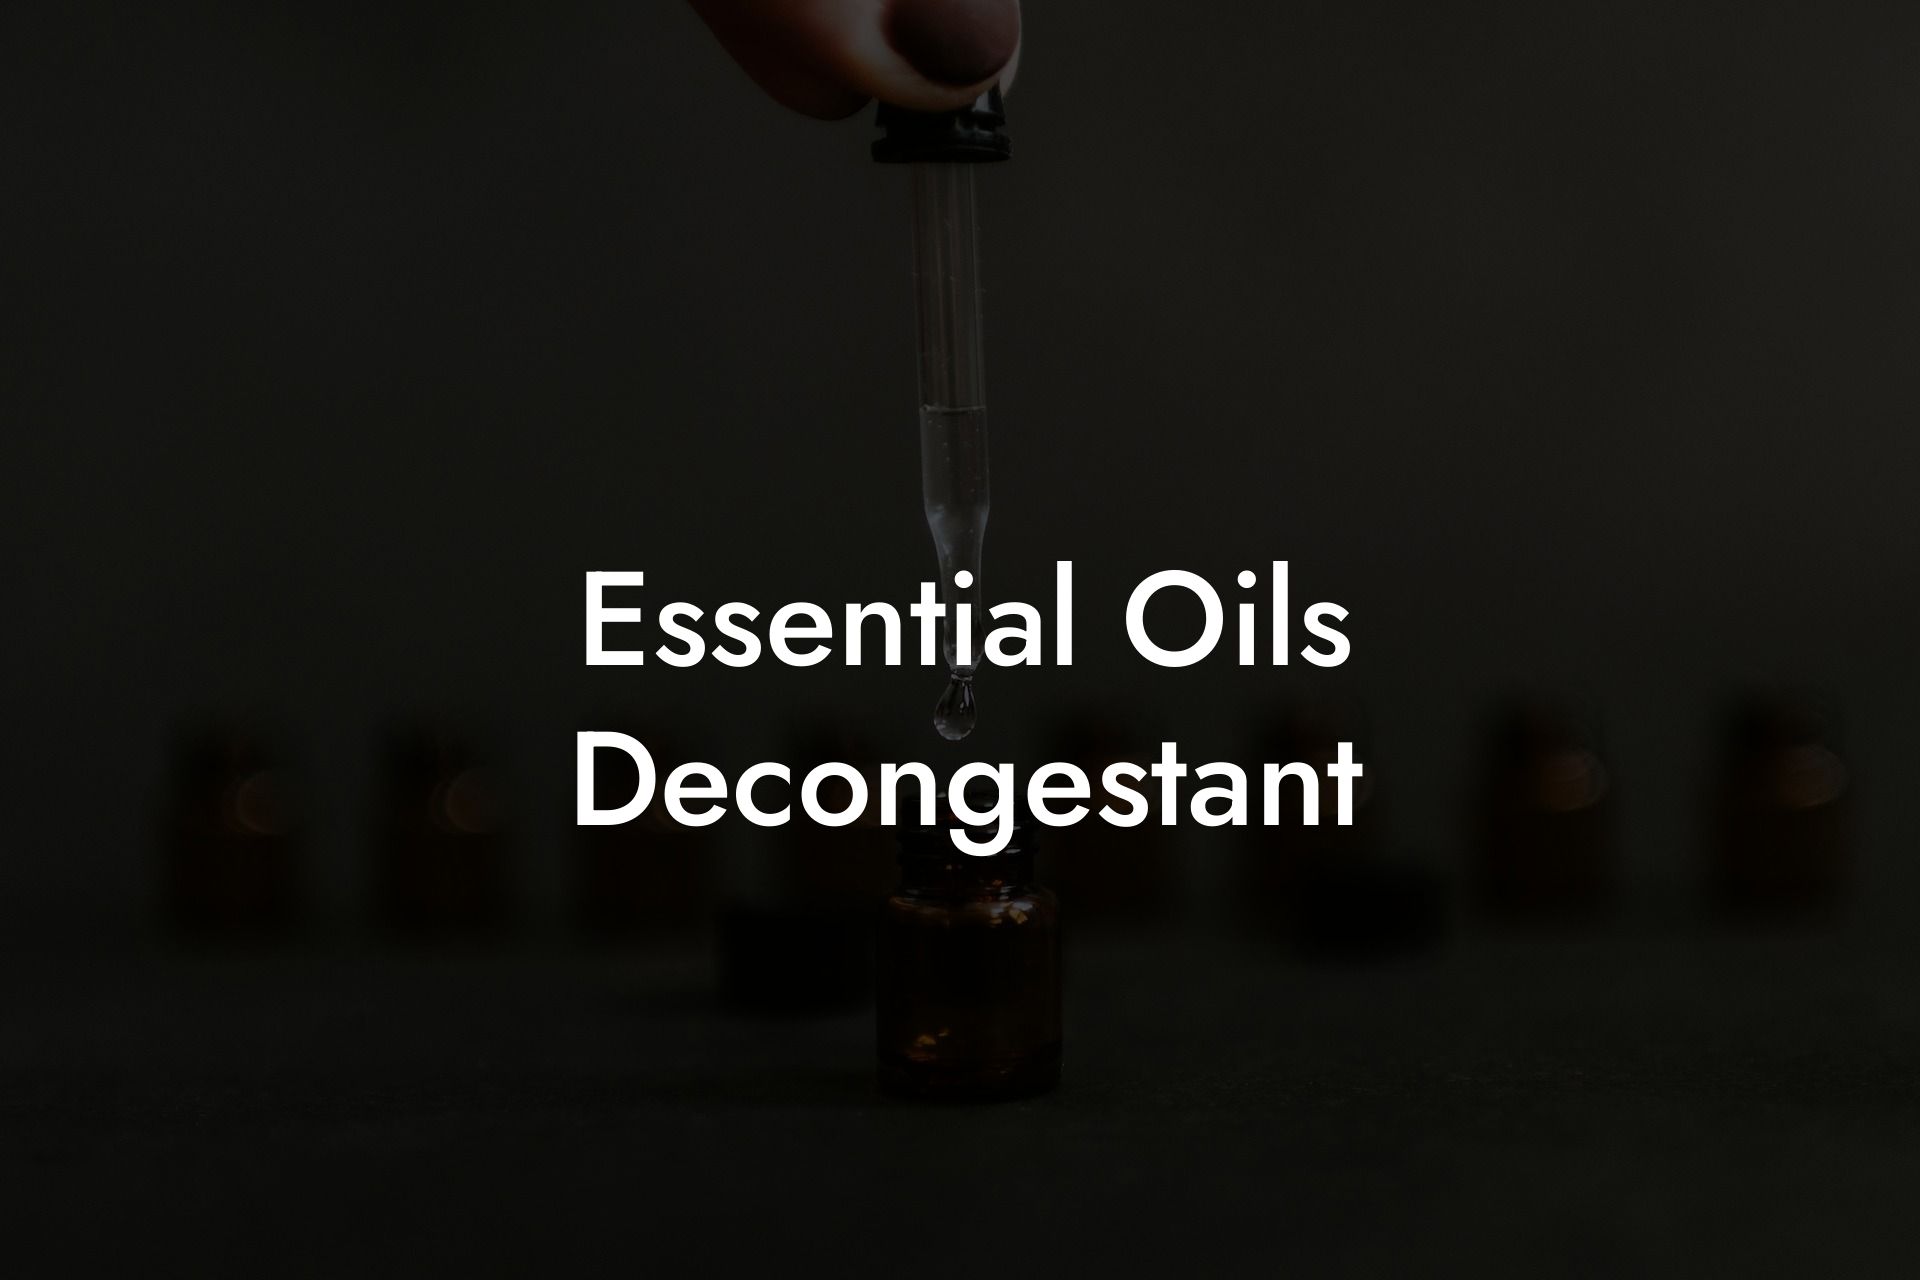 Essential Oils Decongestant